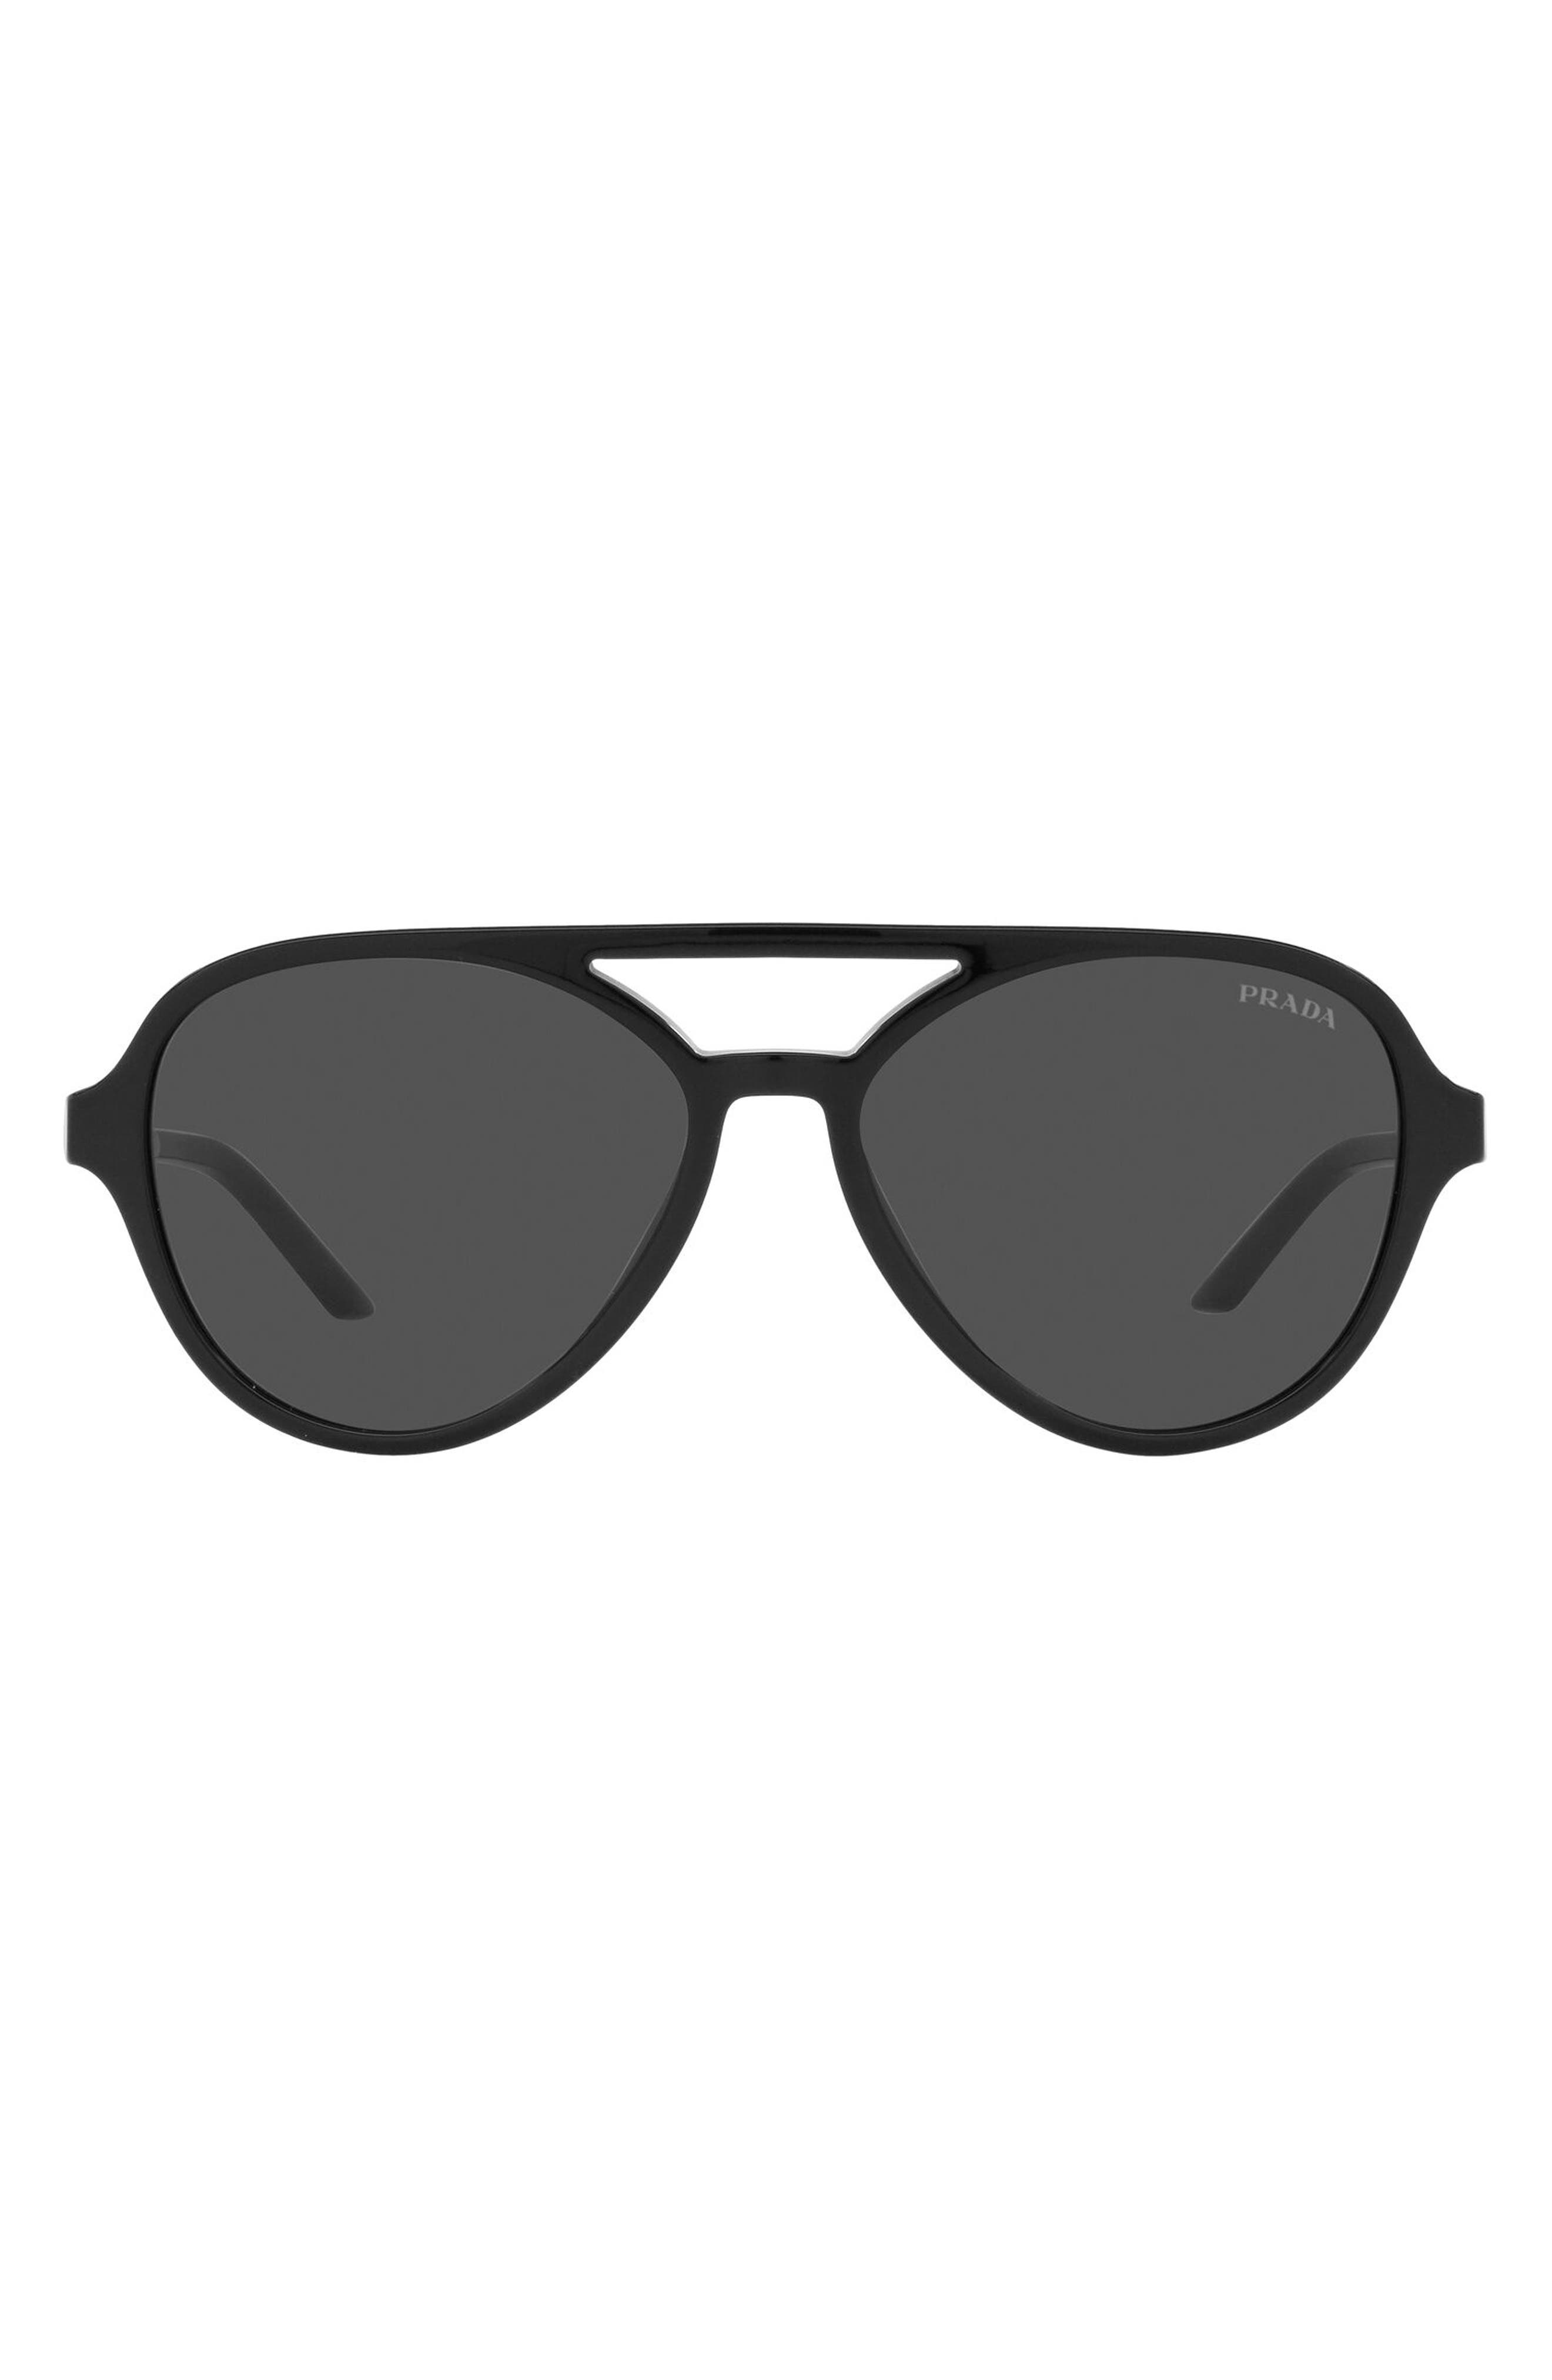 Prada 57mm Aviator Sunglasses in Black at Nordstrom